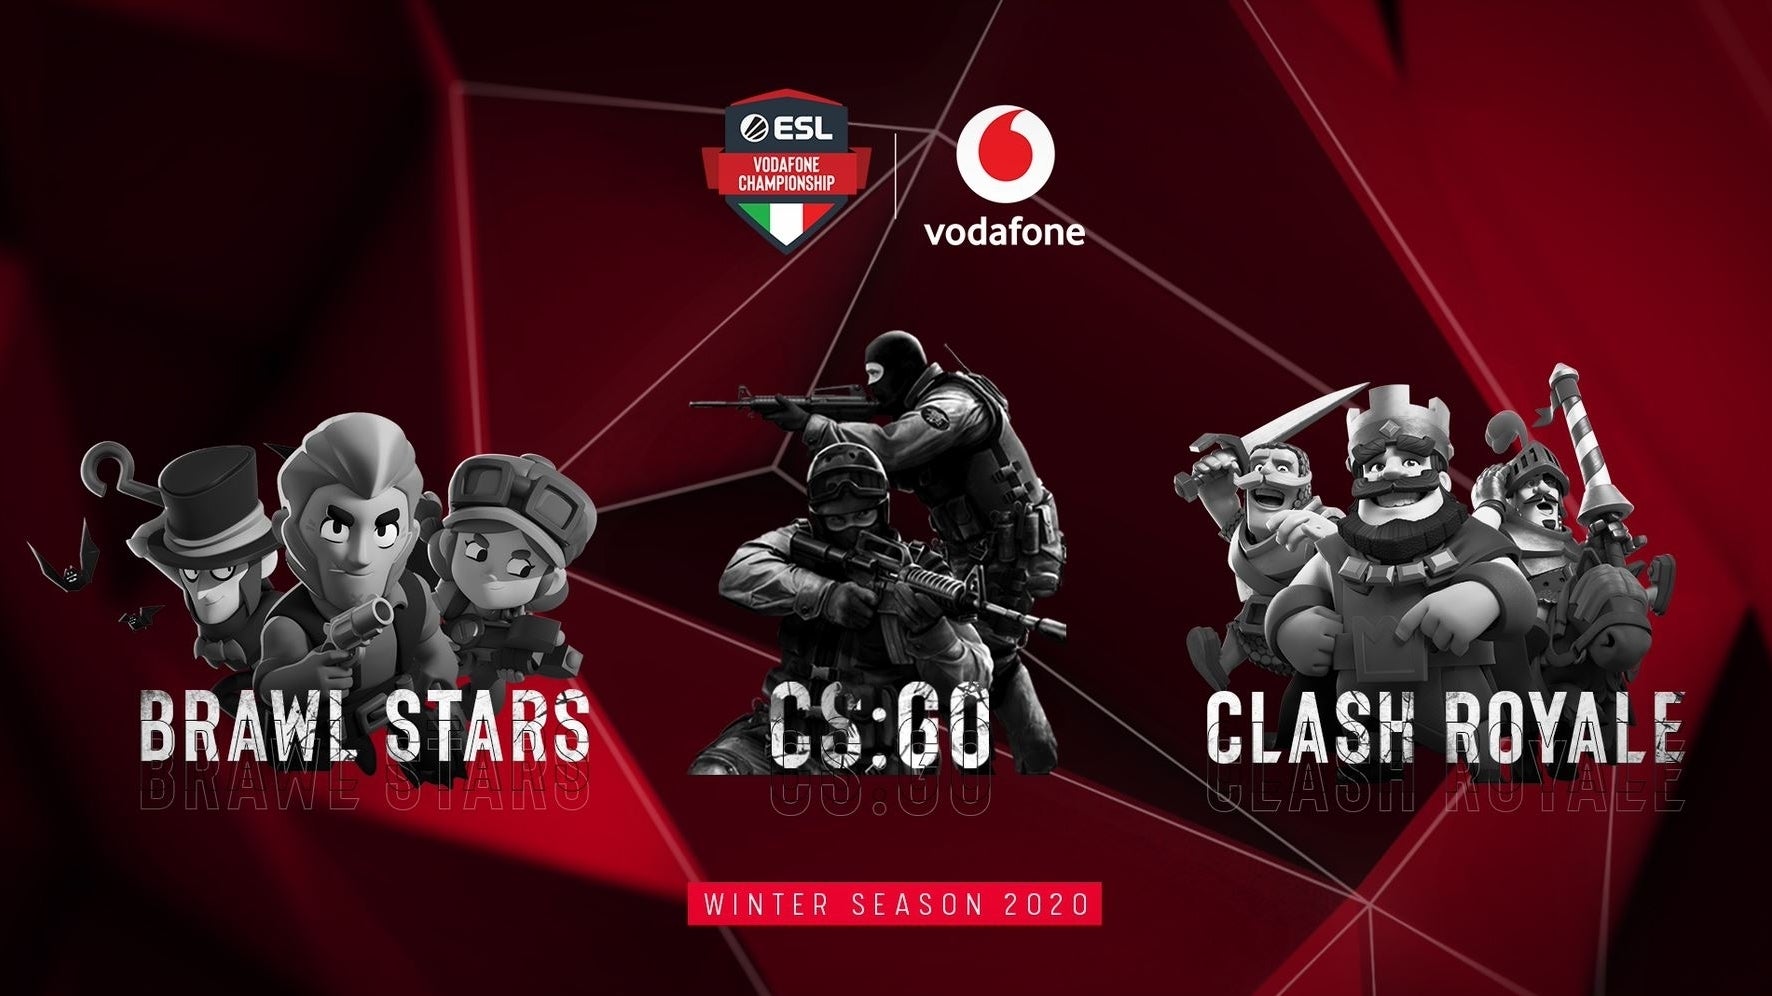 Immagine di ESL Vodafone Championship: la Winter Season 2020 è ai nastri di partenza